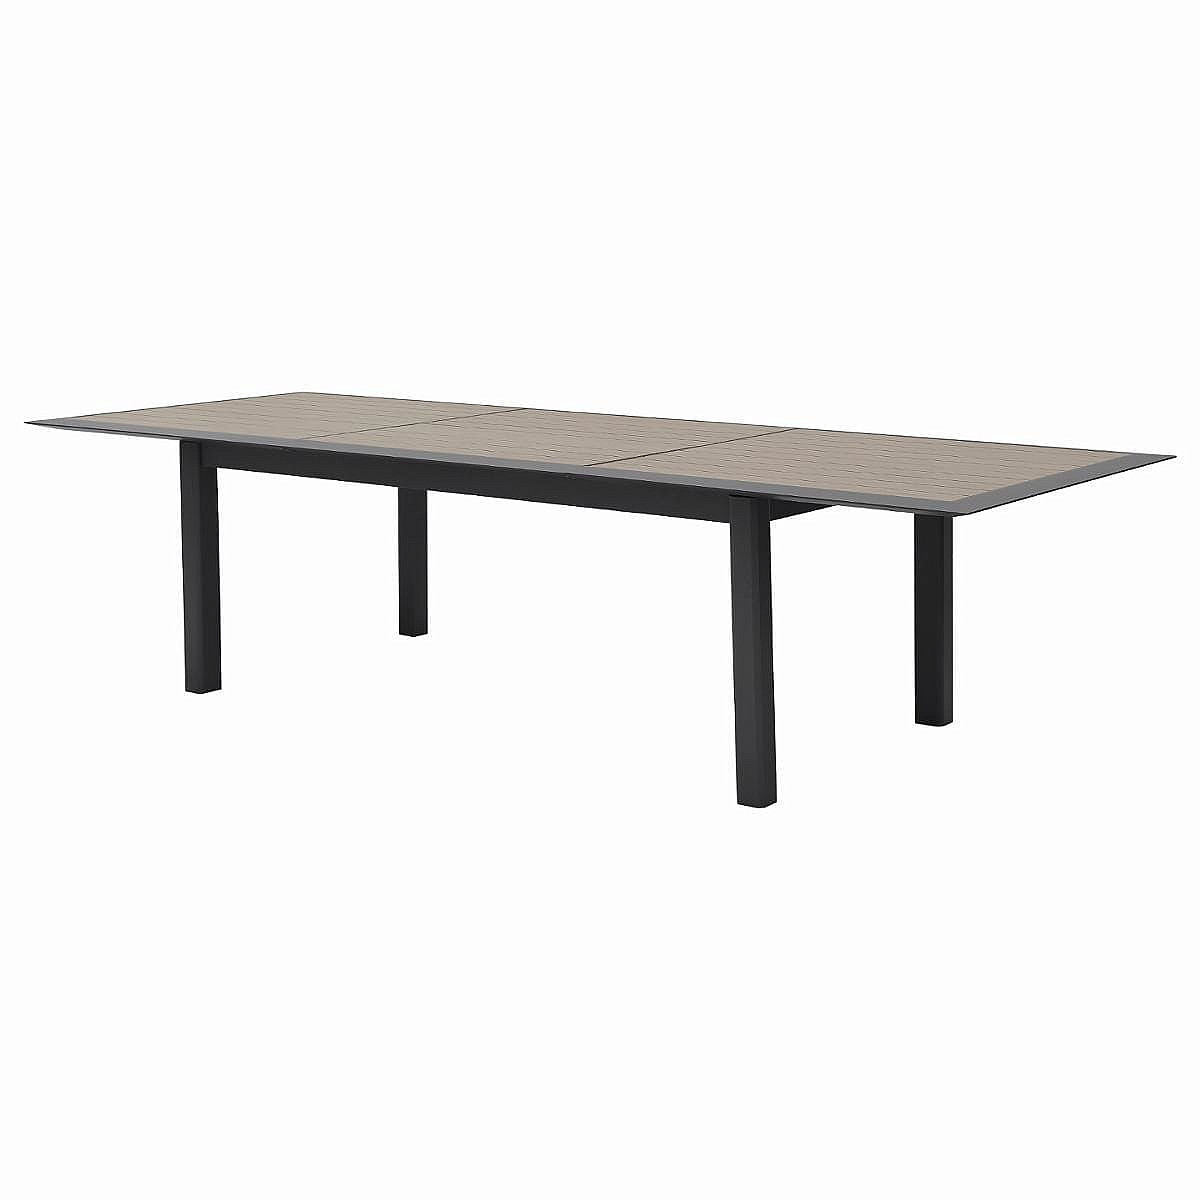 Hliníkový stůl VERMONT 216/316 cm (antracit)